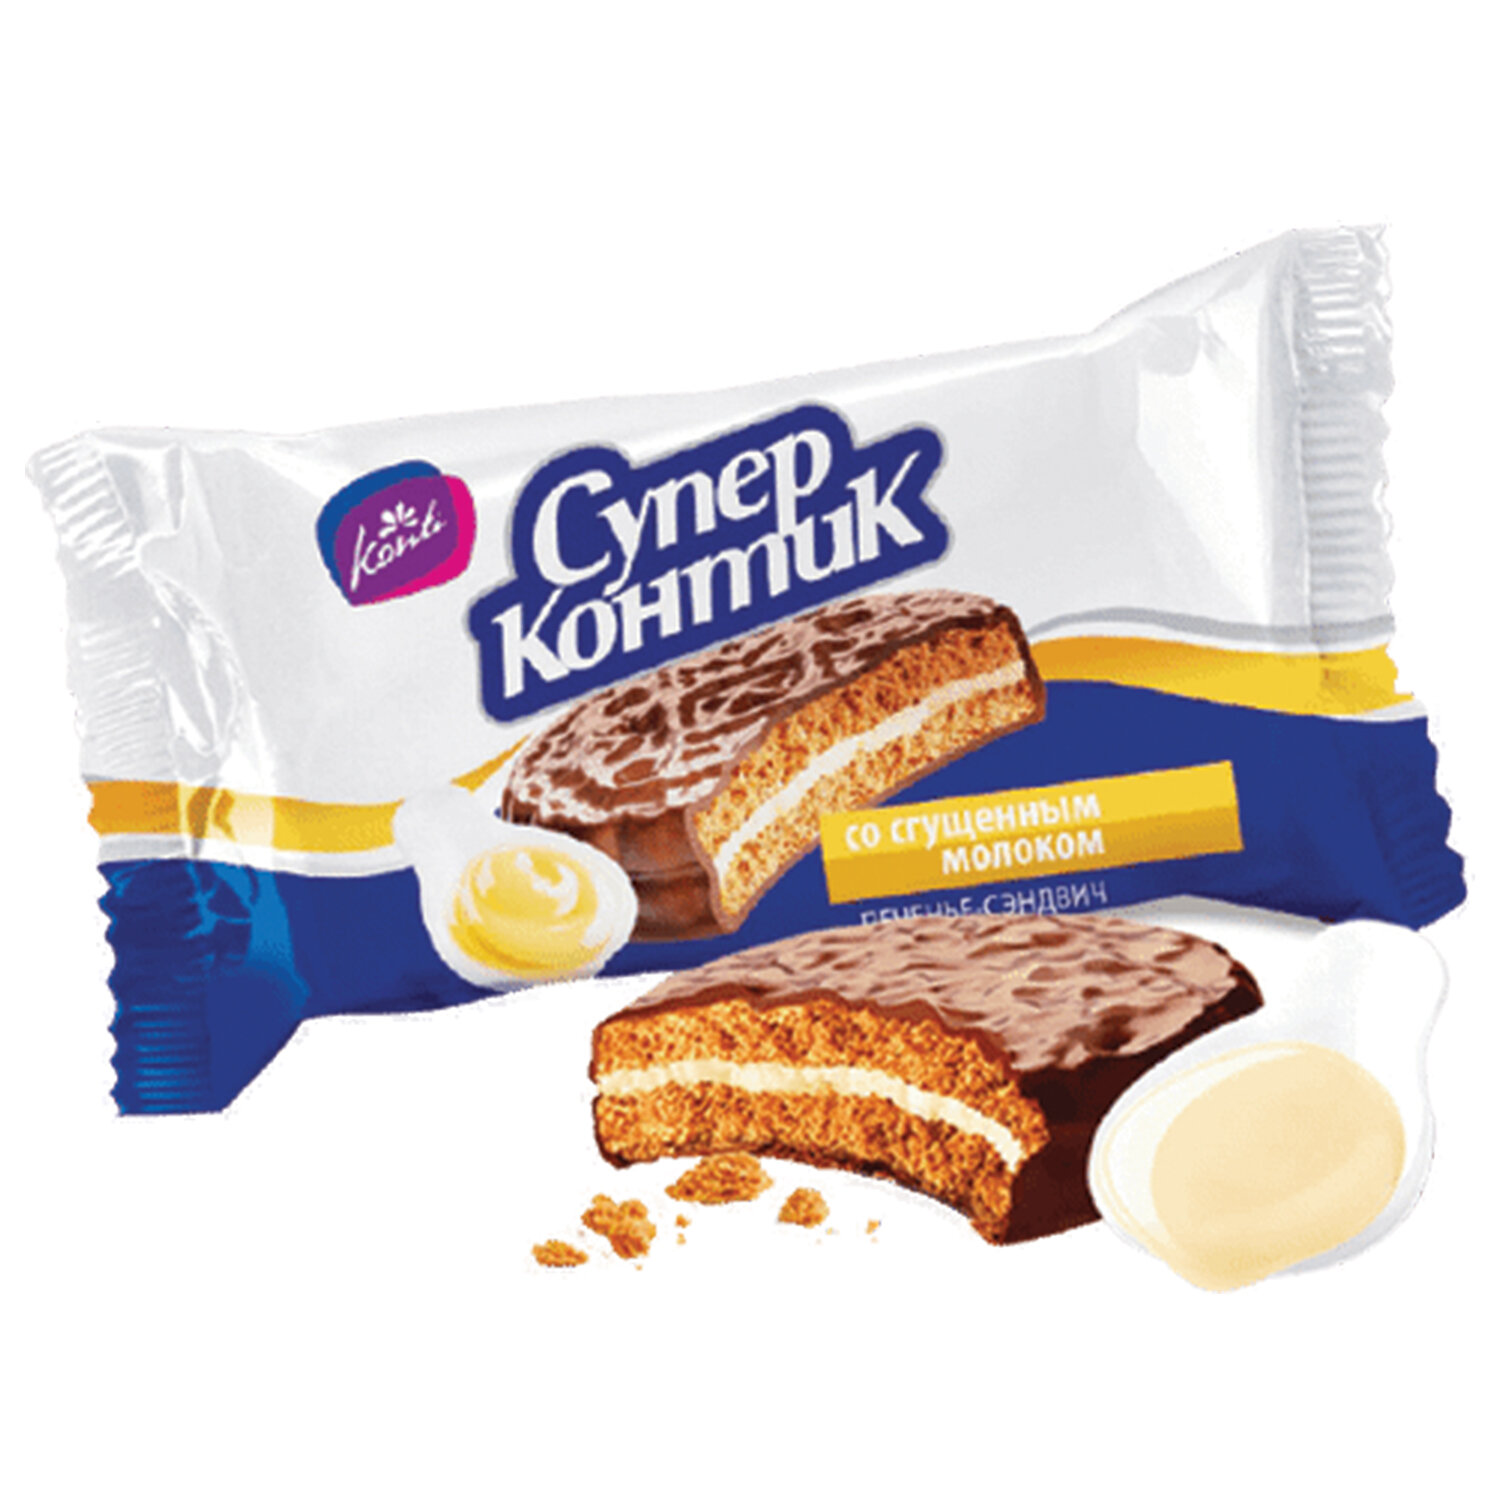 Печенье-сэндвич СУПЕР-КОНТИК 6975, комплект 8 шт.